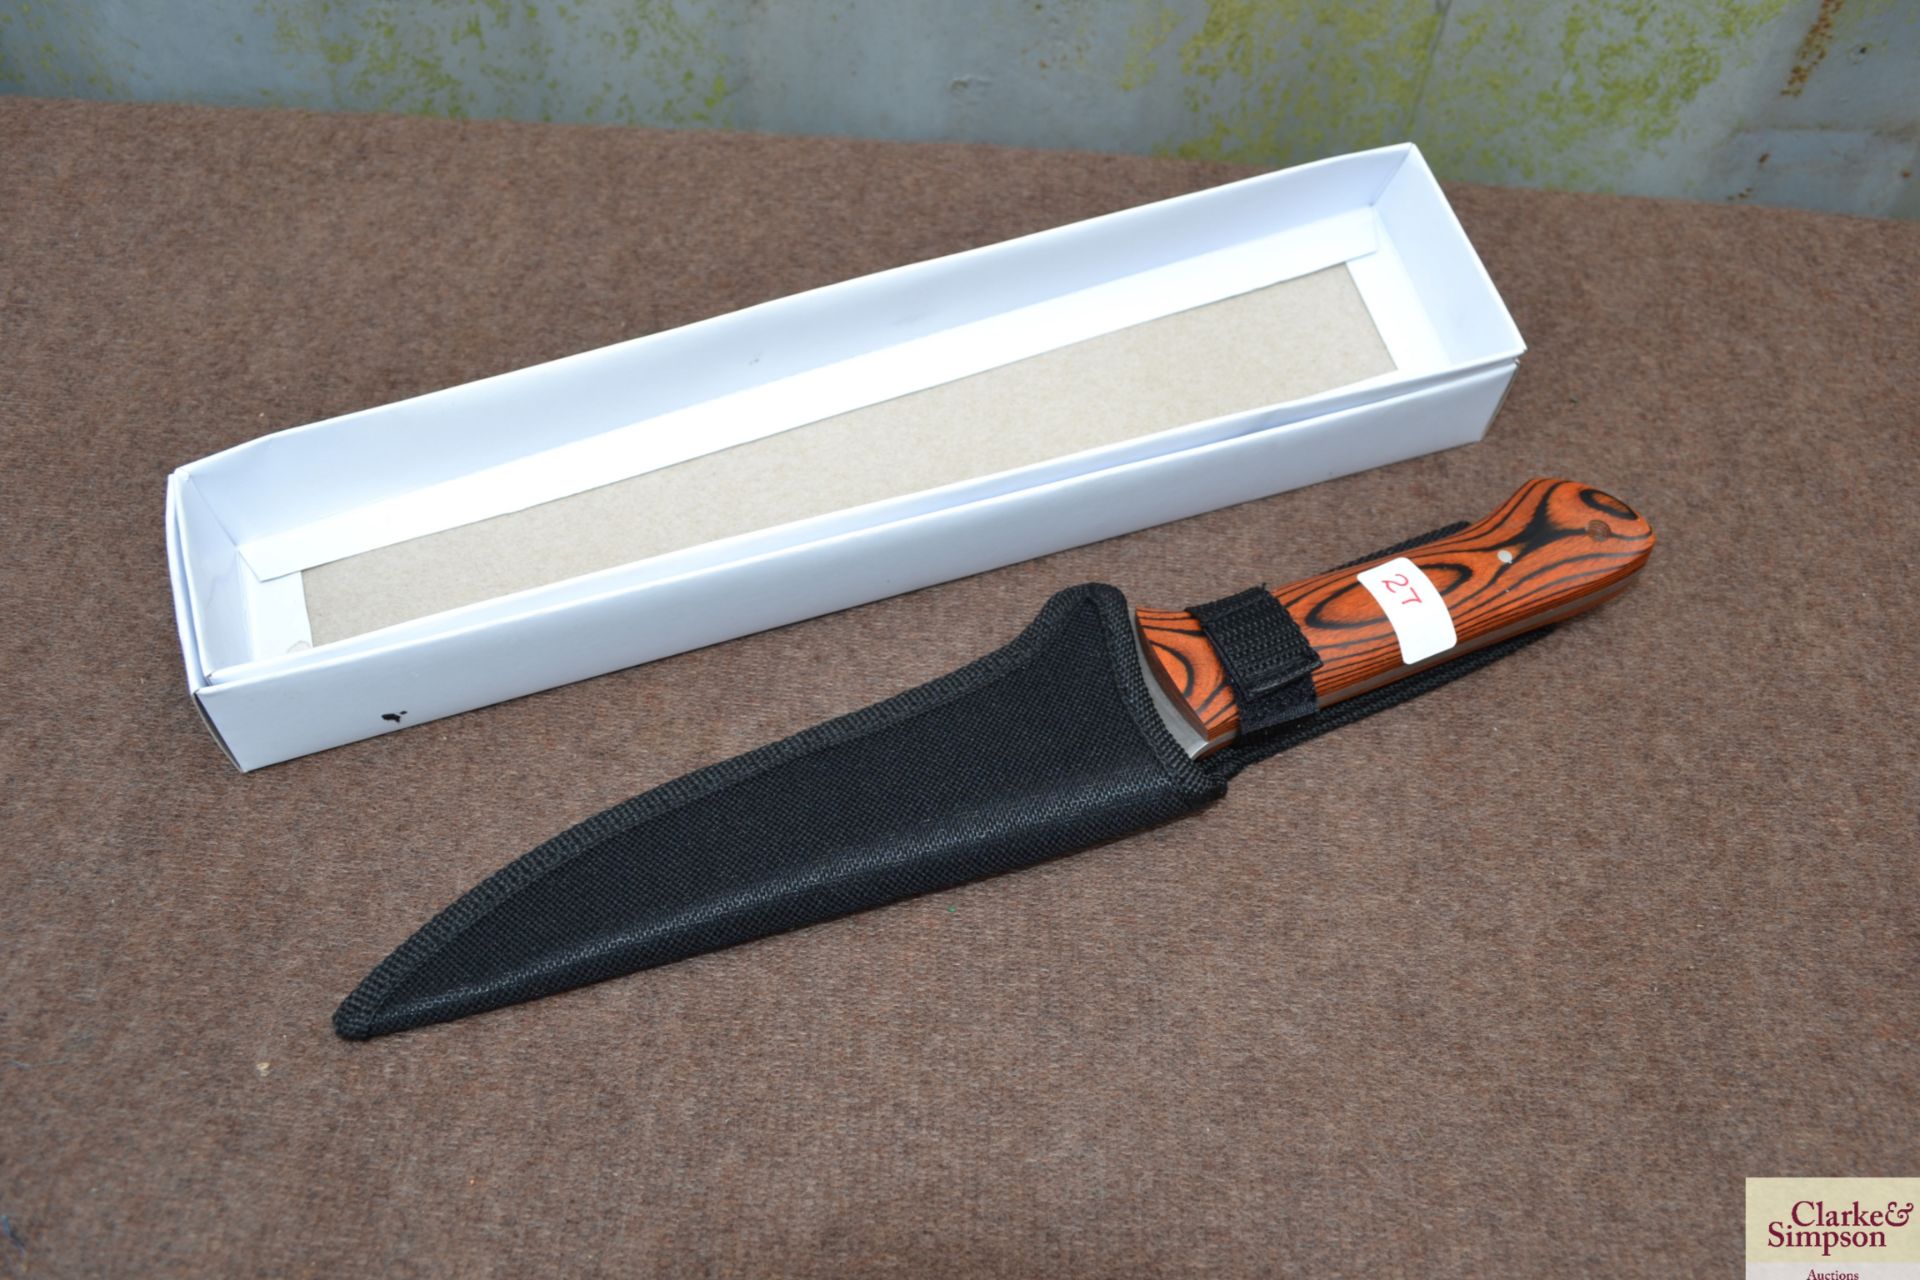 Knife & sheath. V - Image 2 of 2